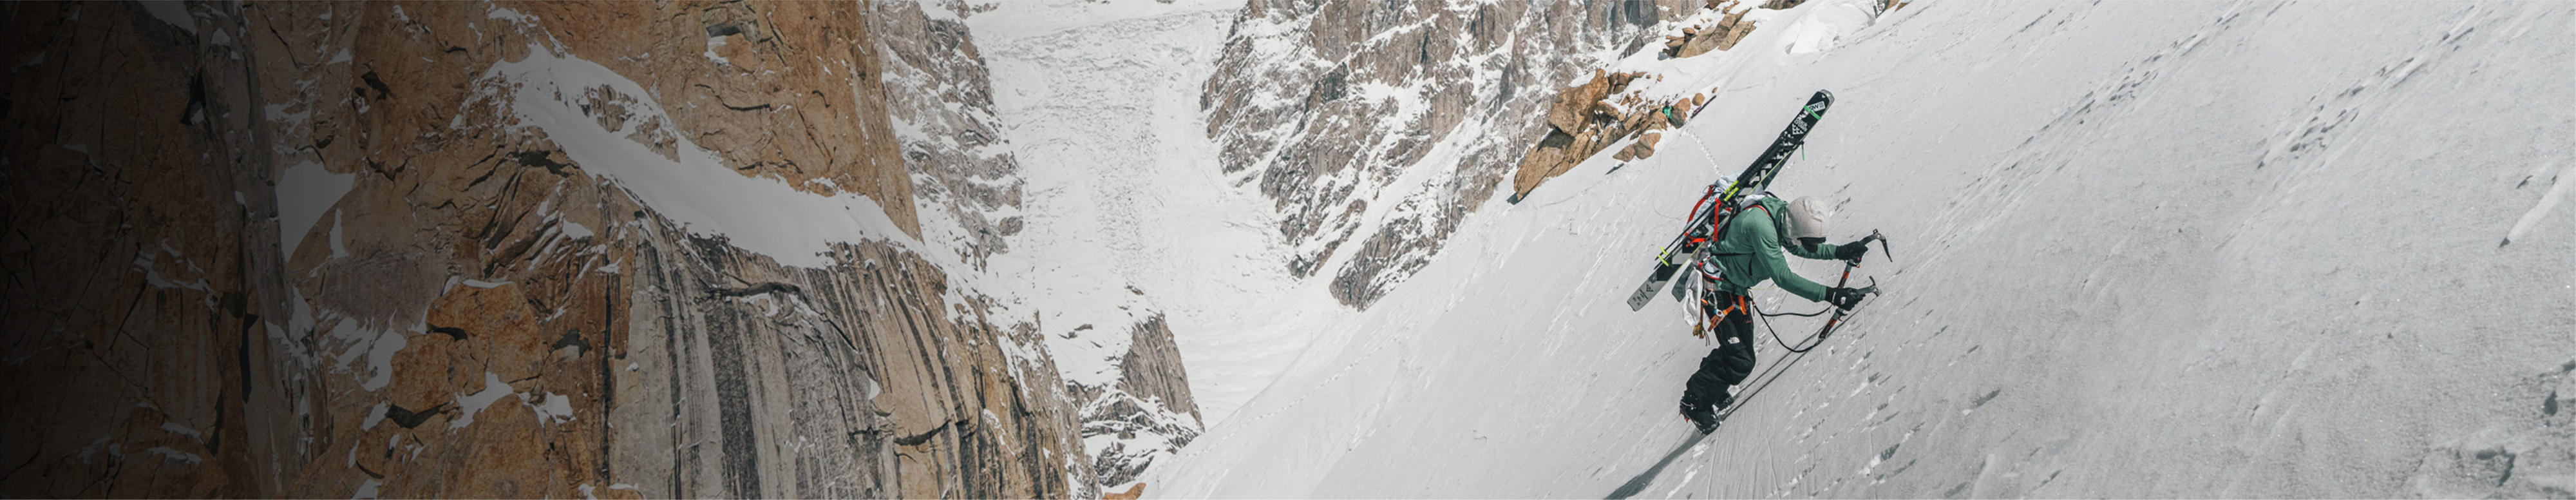 Un homme vêtu de l’équipement Summit Series de The North Face fait de l’escalade sur glace.